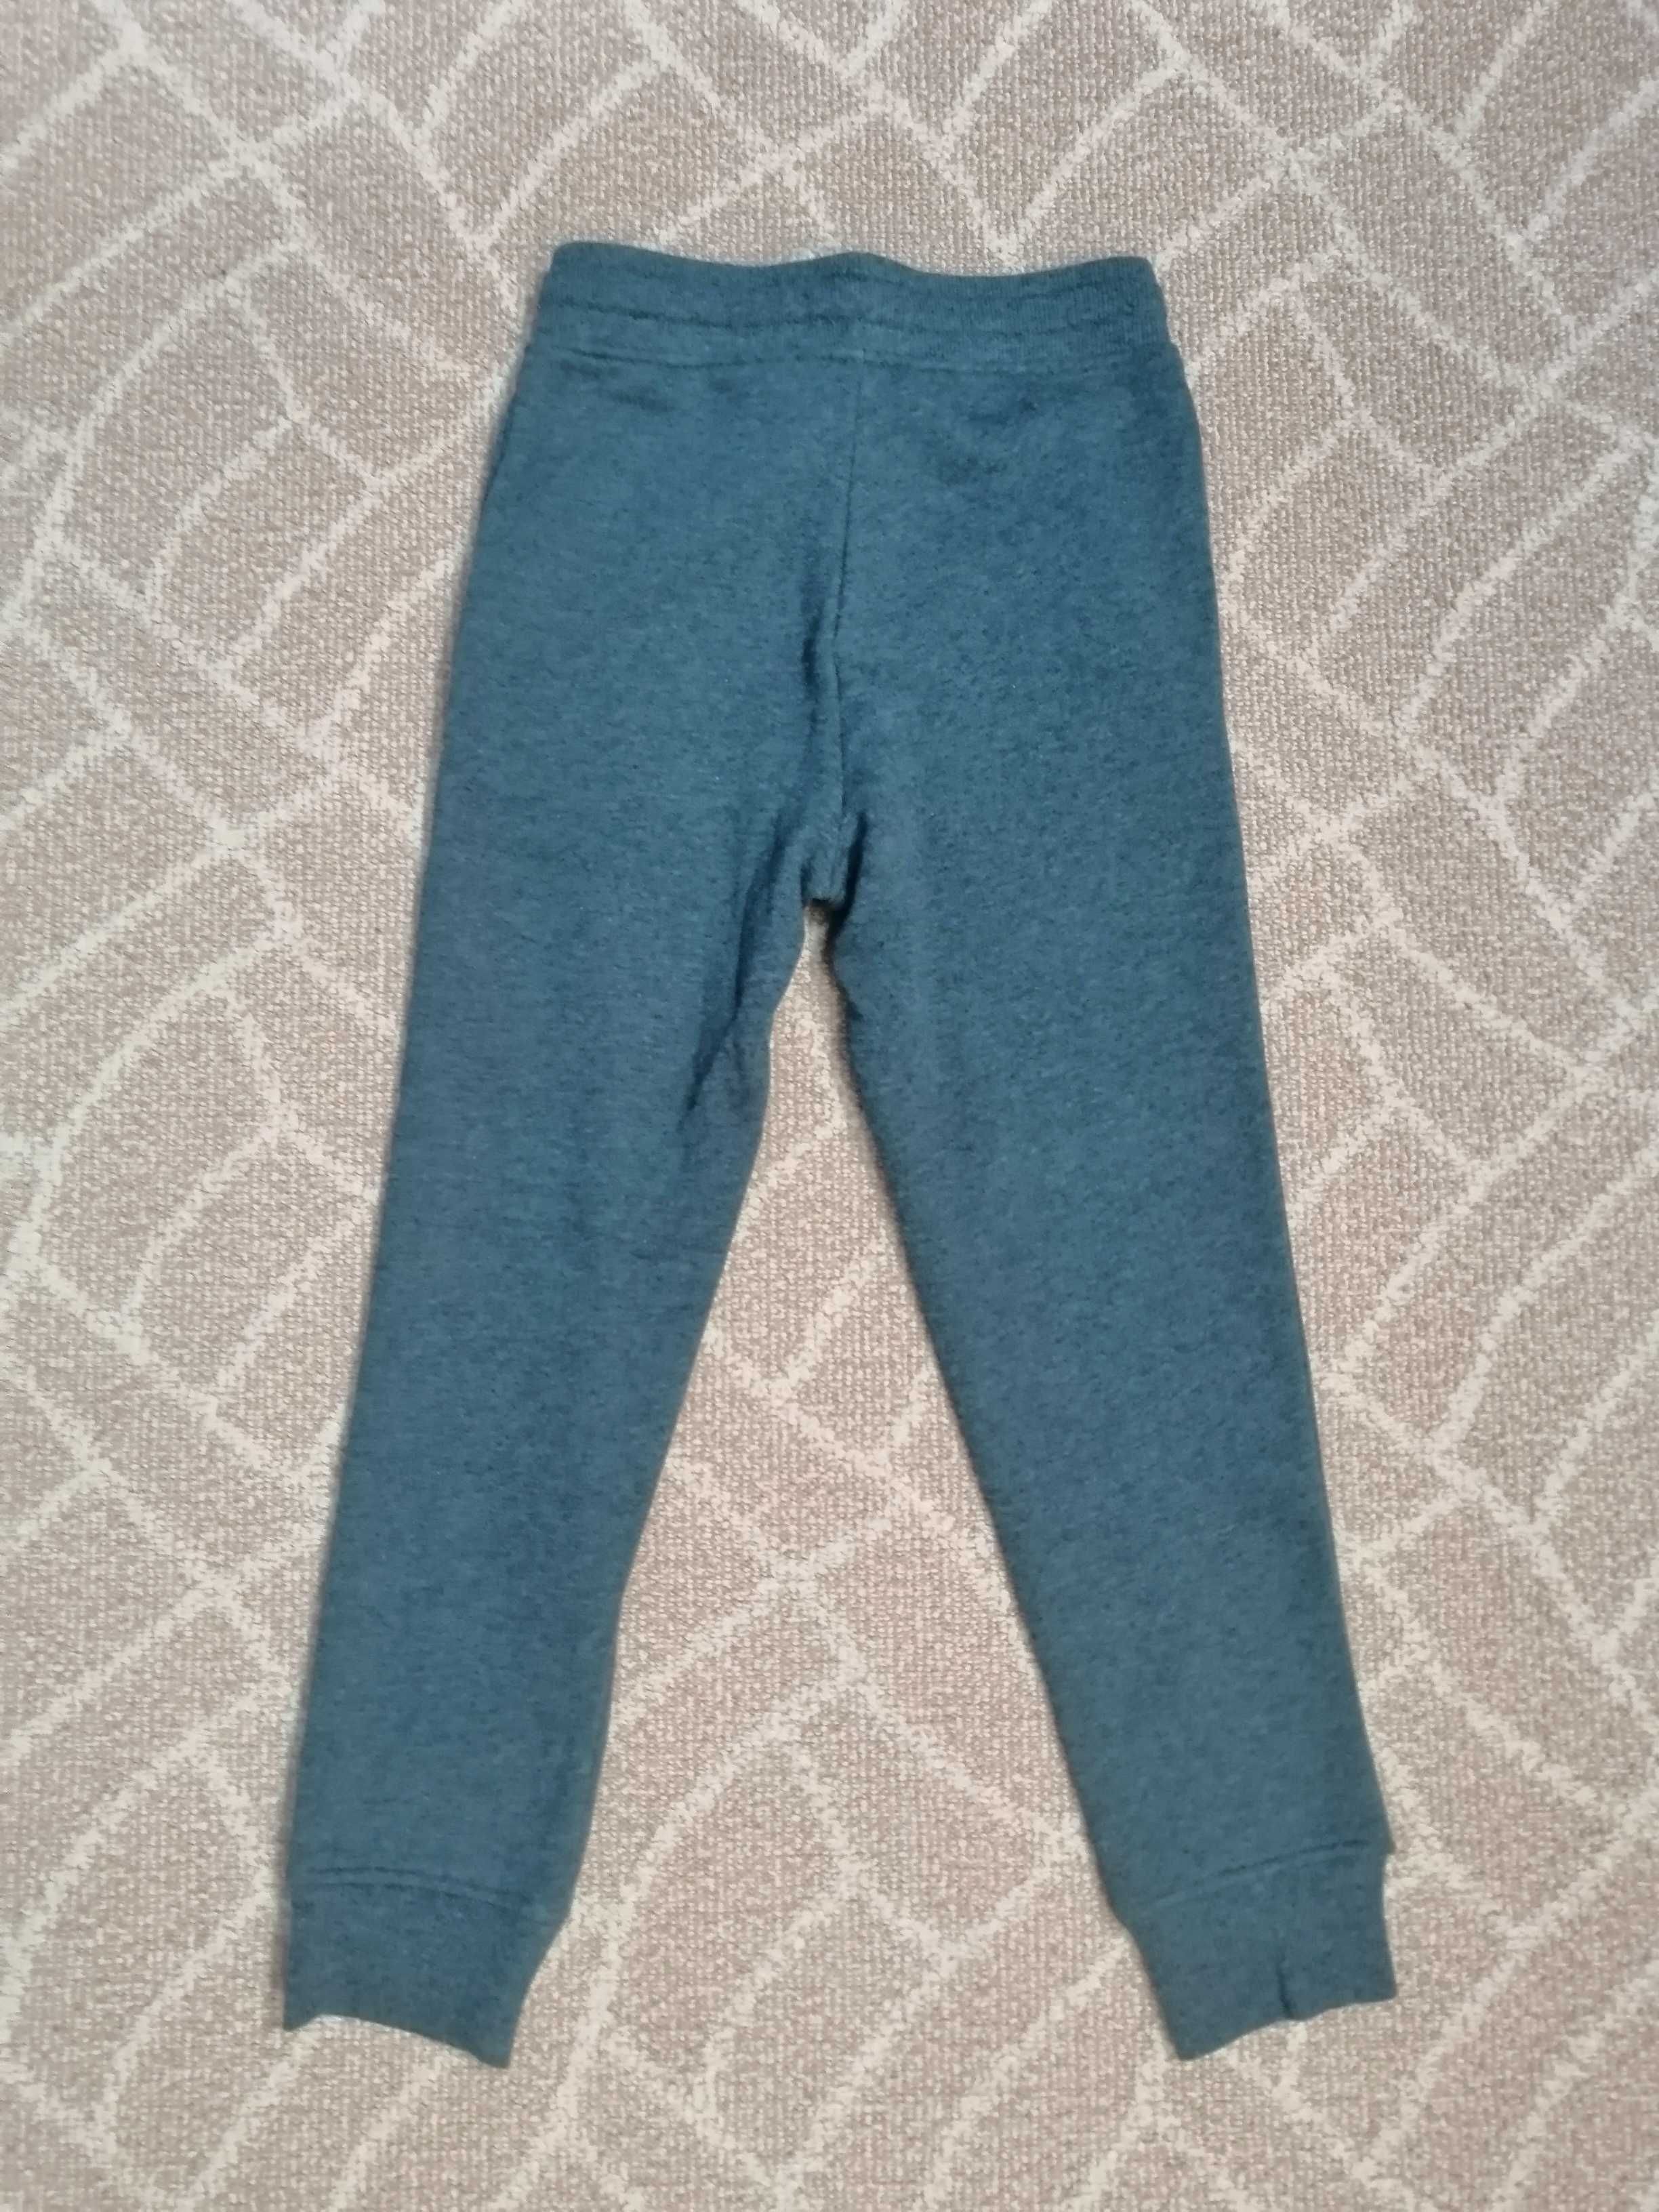 Теплые штаны оригинал H&M на мальчика 8-9 лет 134